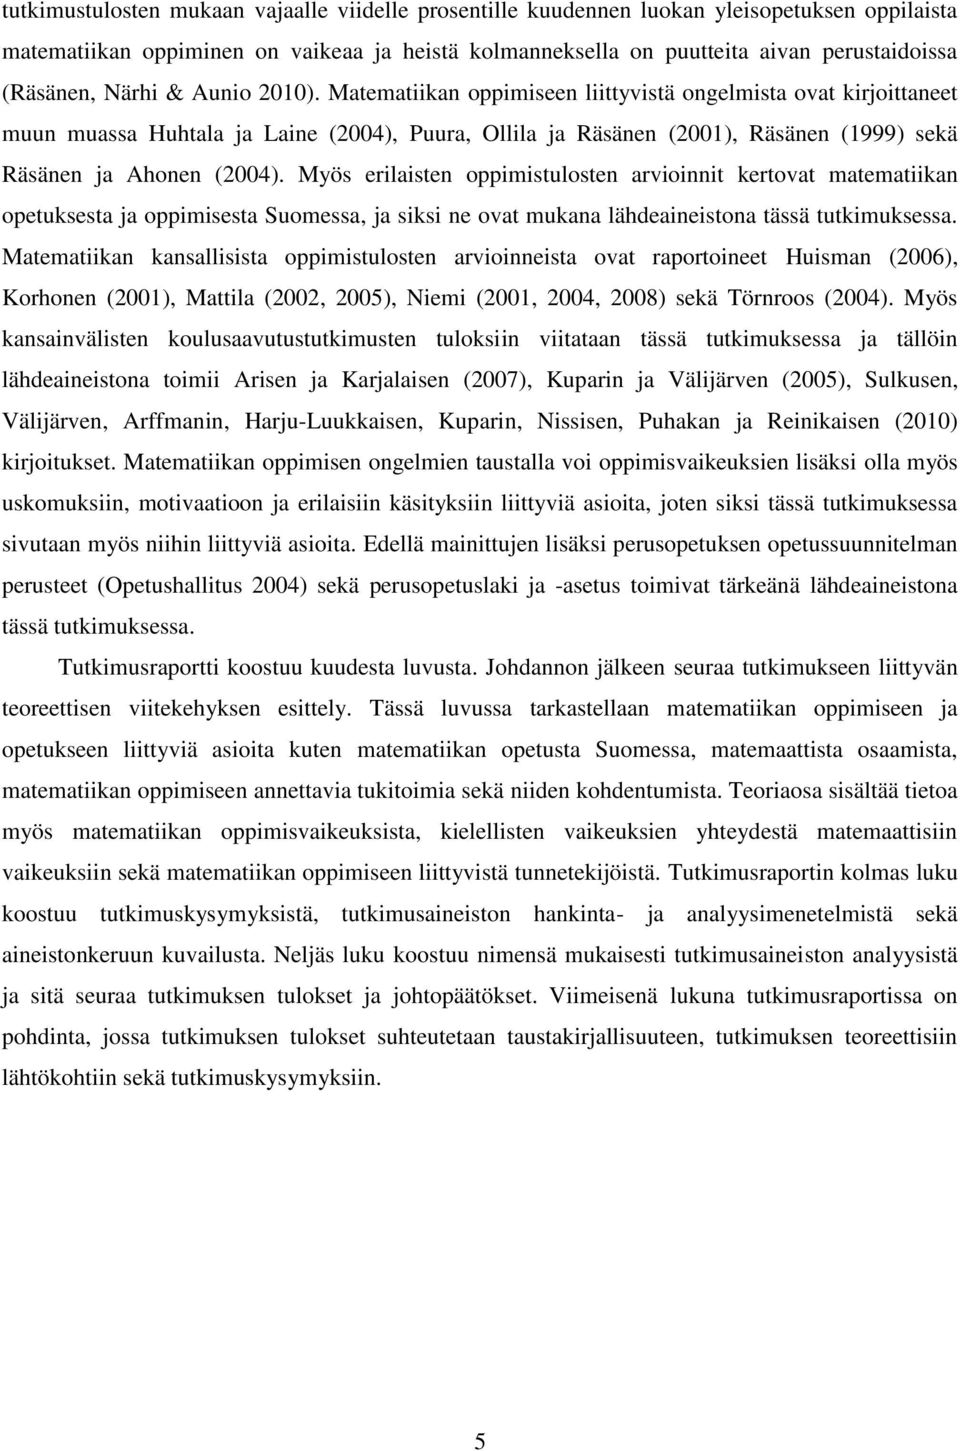 Matematiikan oppimiseen liittyvistä ongelmista ovat kirjoittaneet muun muassa Huhtala ja Laine (2004), Puura, Ollila ja Räsänen (2001), Räsänen (1999) sekä Räsänen ja Ahonen (2004).